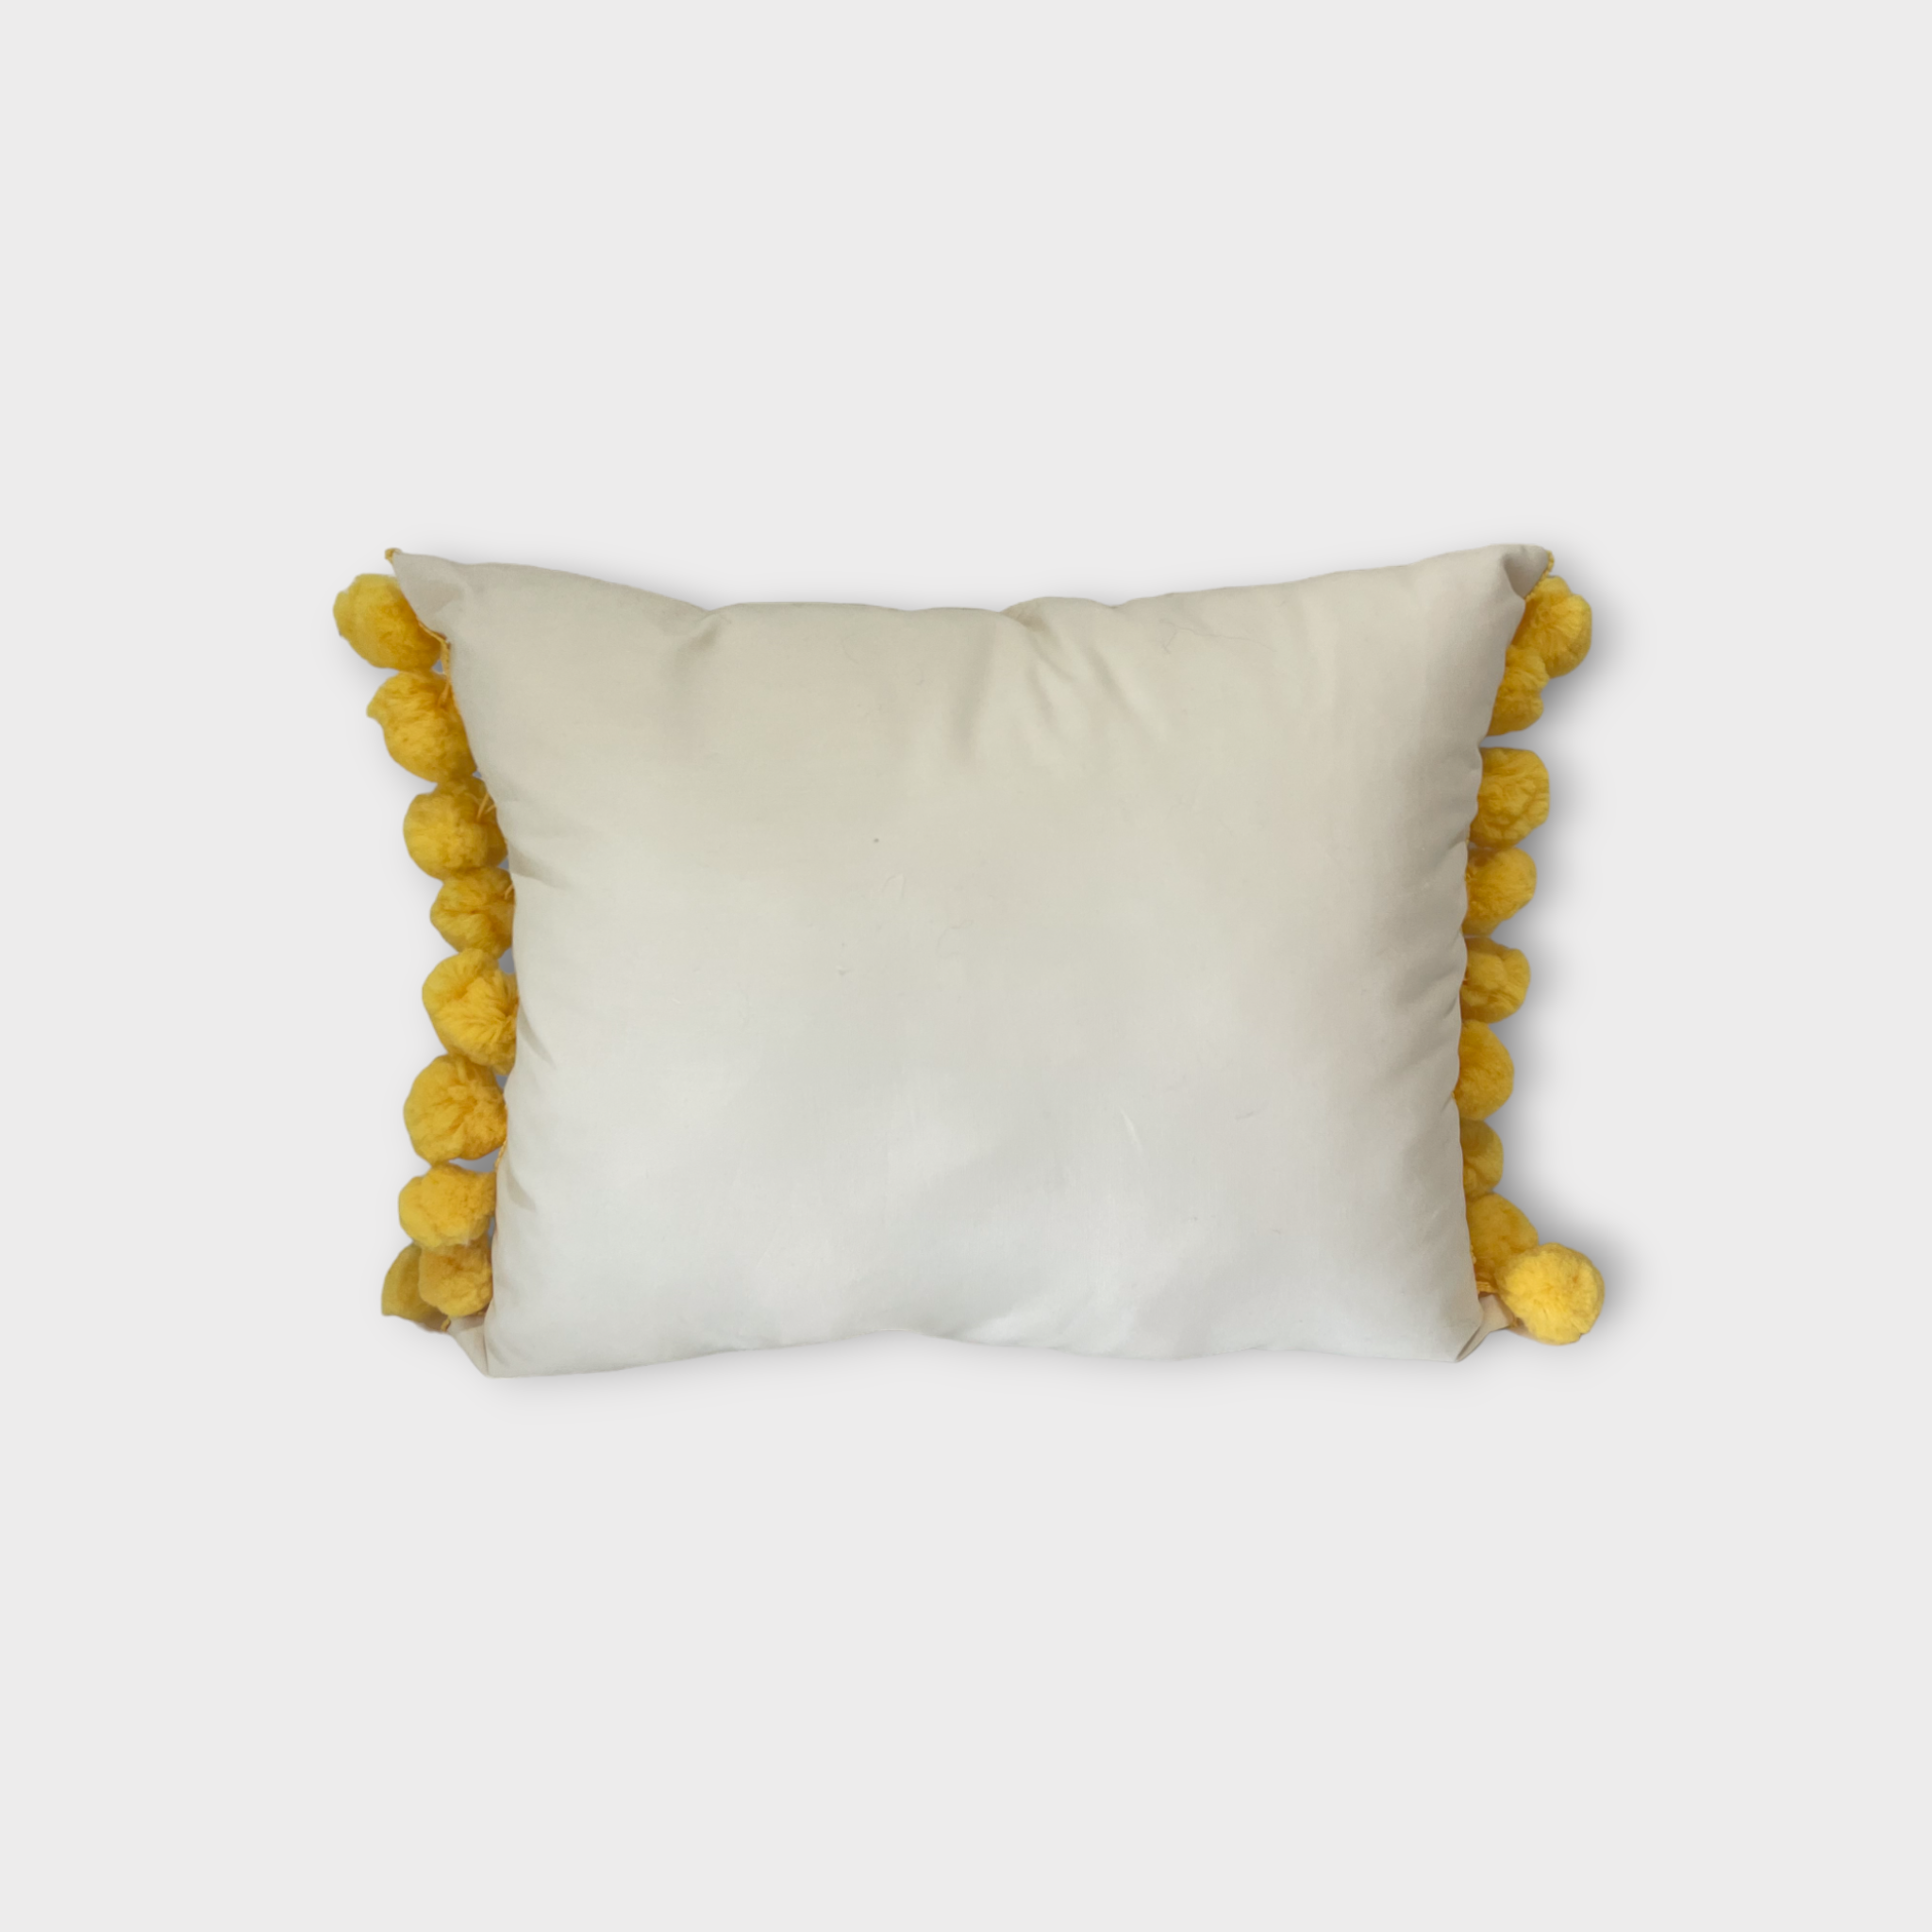 Otomi throw pillow, yellow pompom